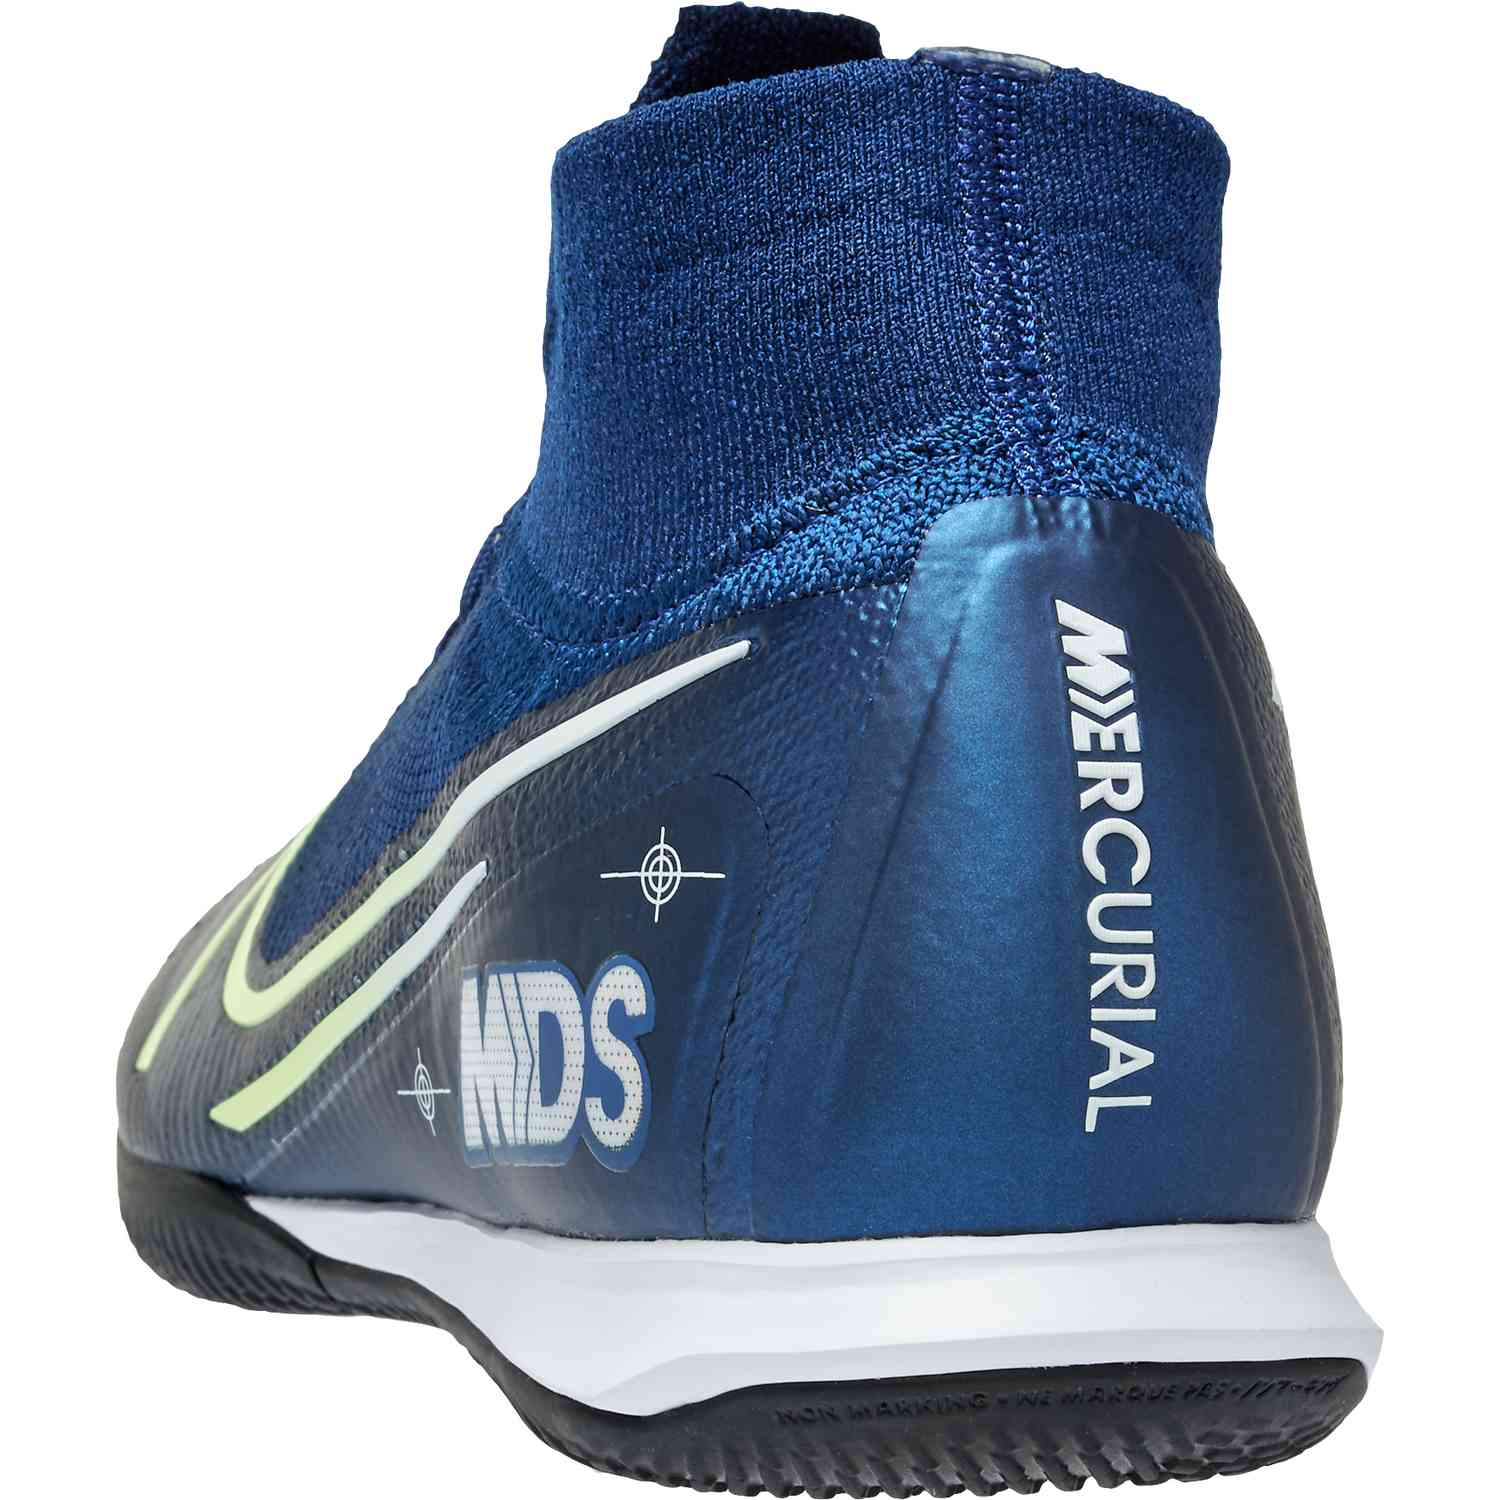 Nike Mercurial Superfly 6 Elite IC Indoor Soccer Shoes. eBay